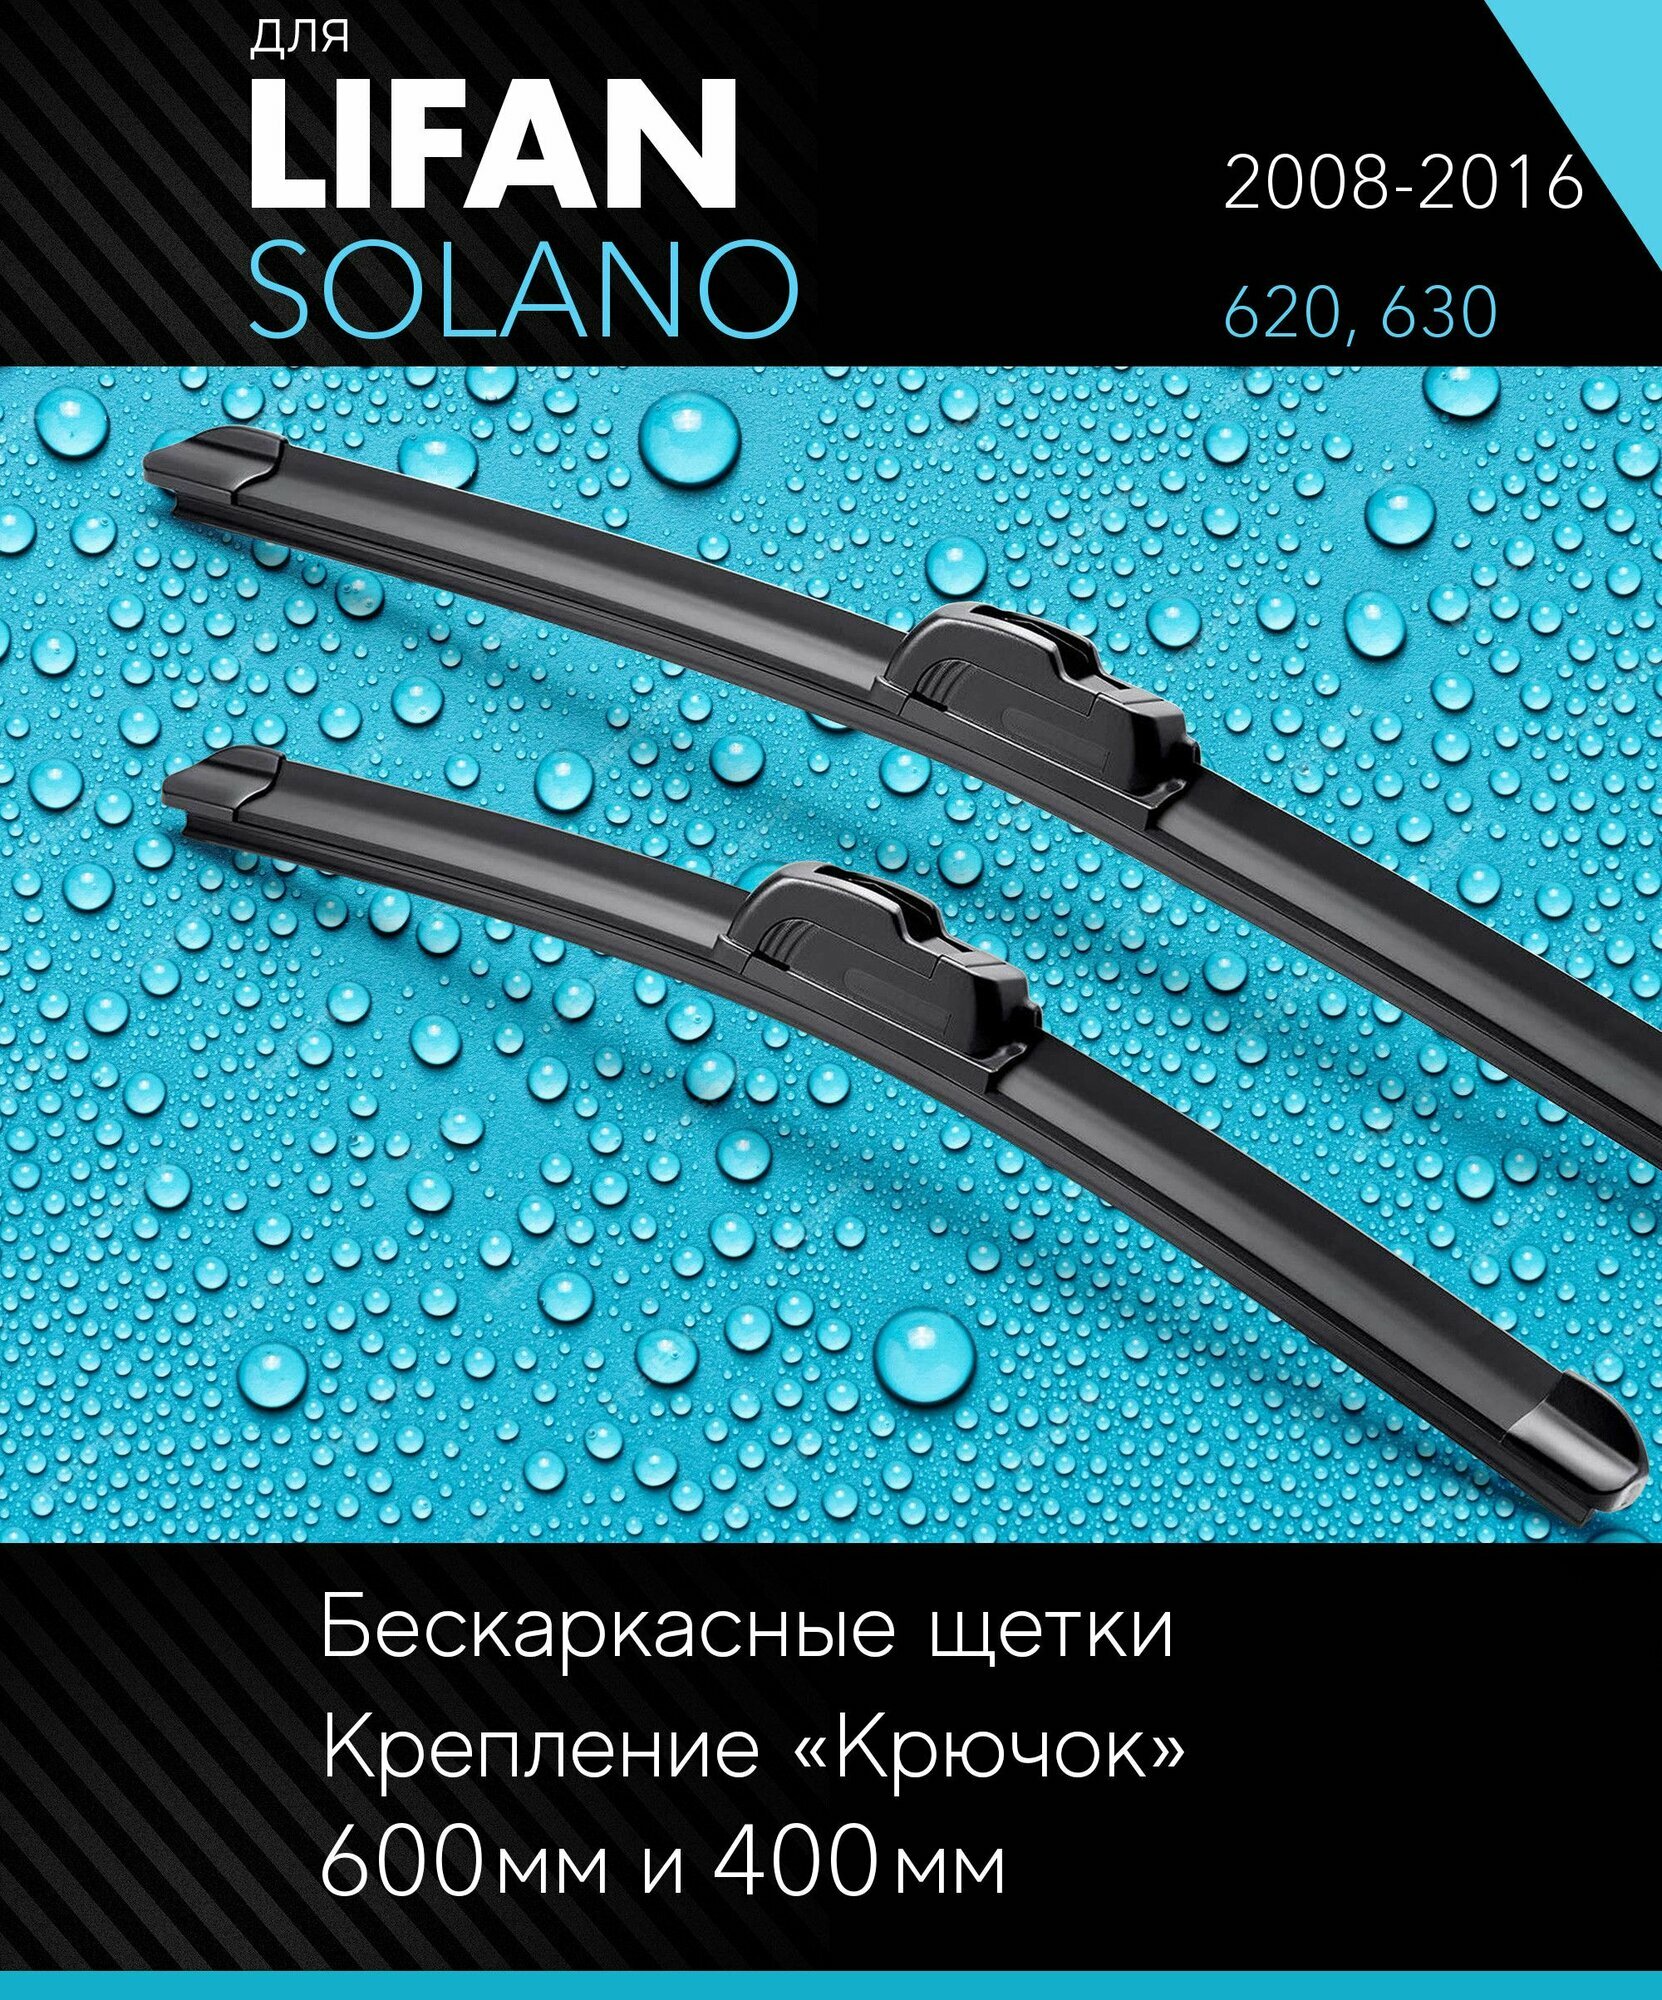 2 щетки стеклоочистителя 600 400 мм на Лифан Солано 2008-2016 бескаркасные дворники комплект для Lifan Solano (620 630) - Autoled